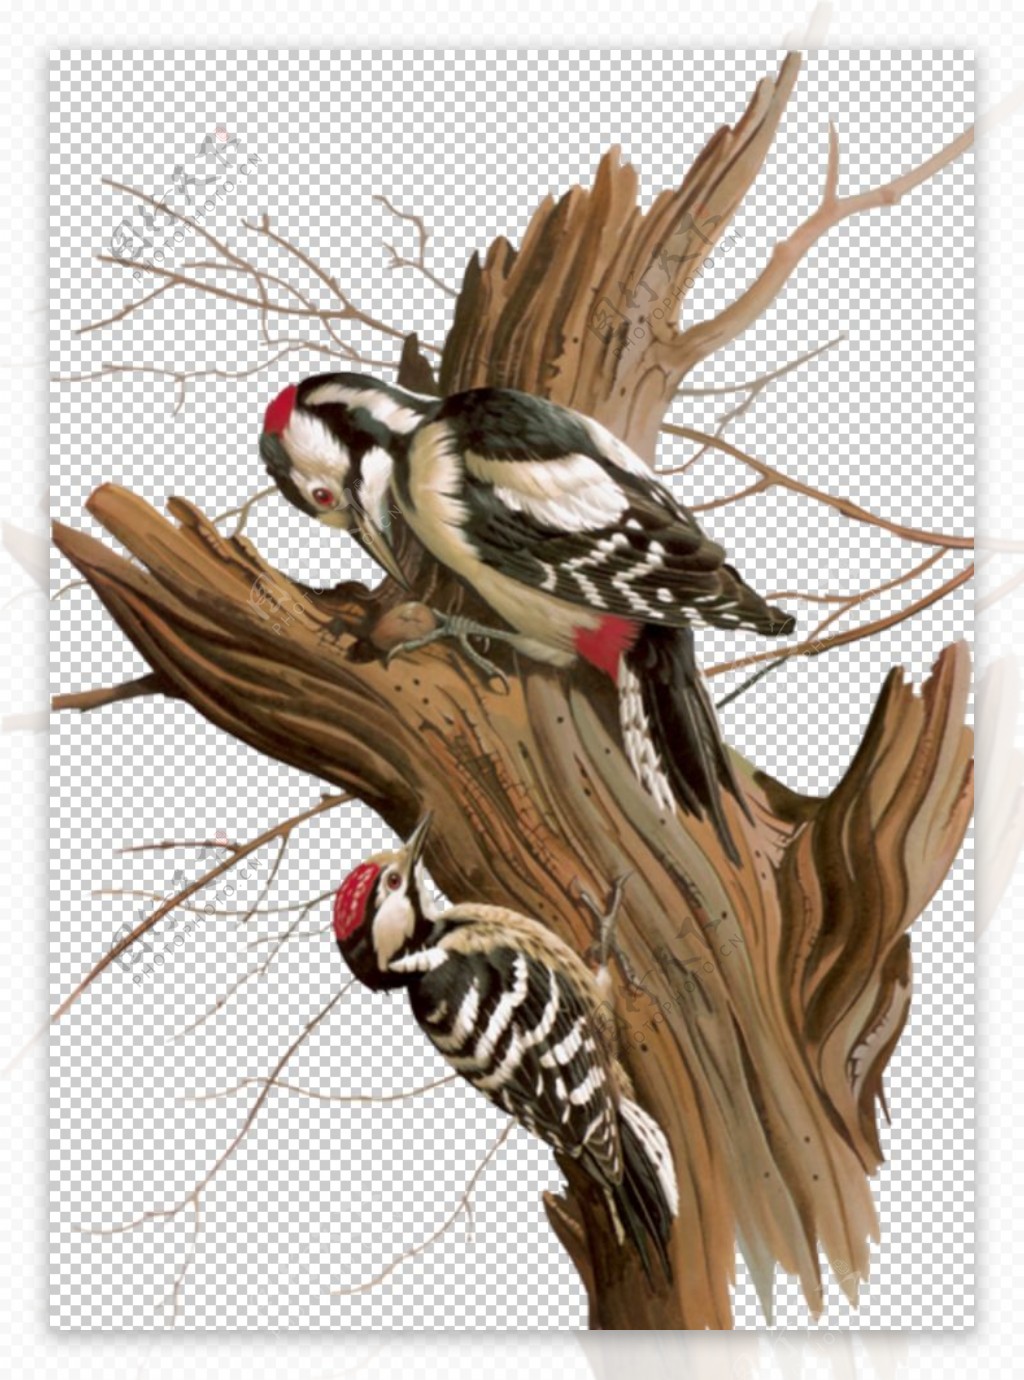 啄木鸟插画素材图片下载-素材编号06805258-素材天下图库